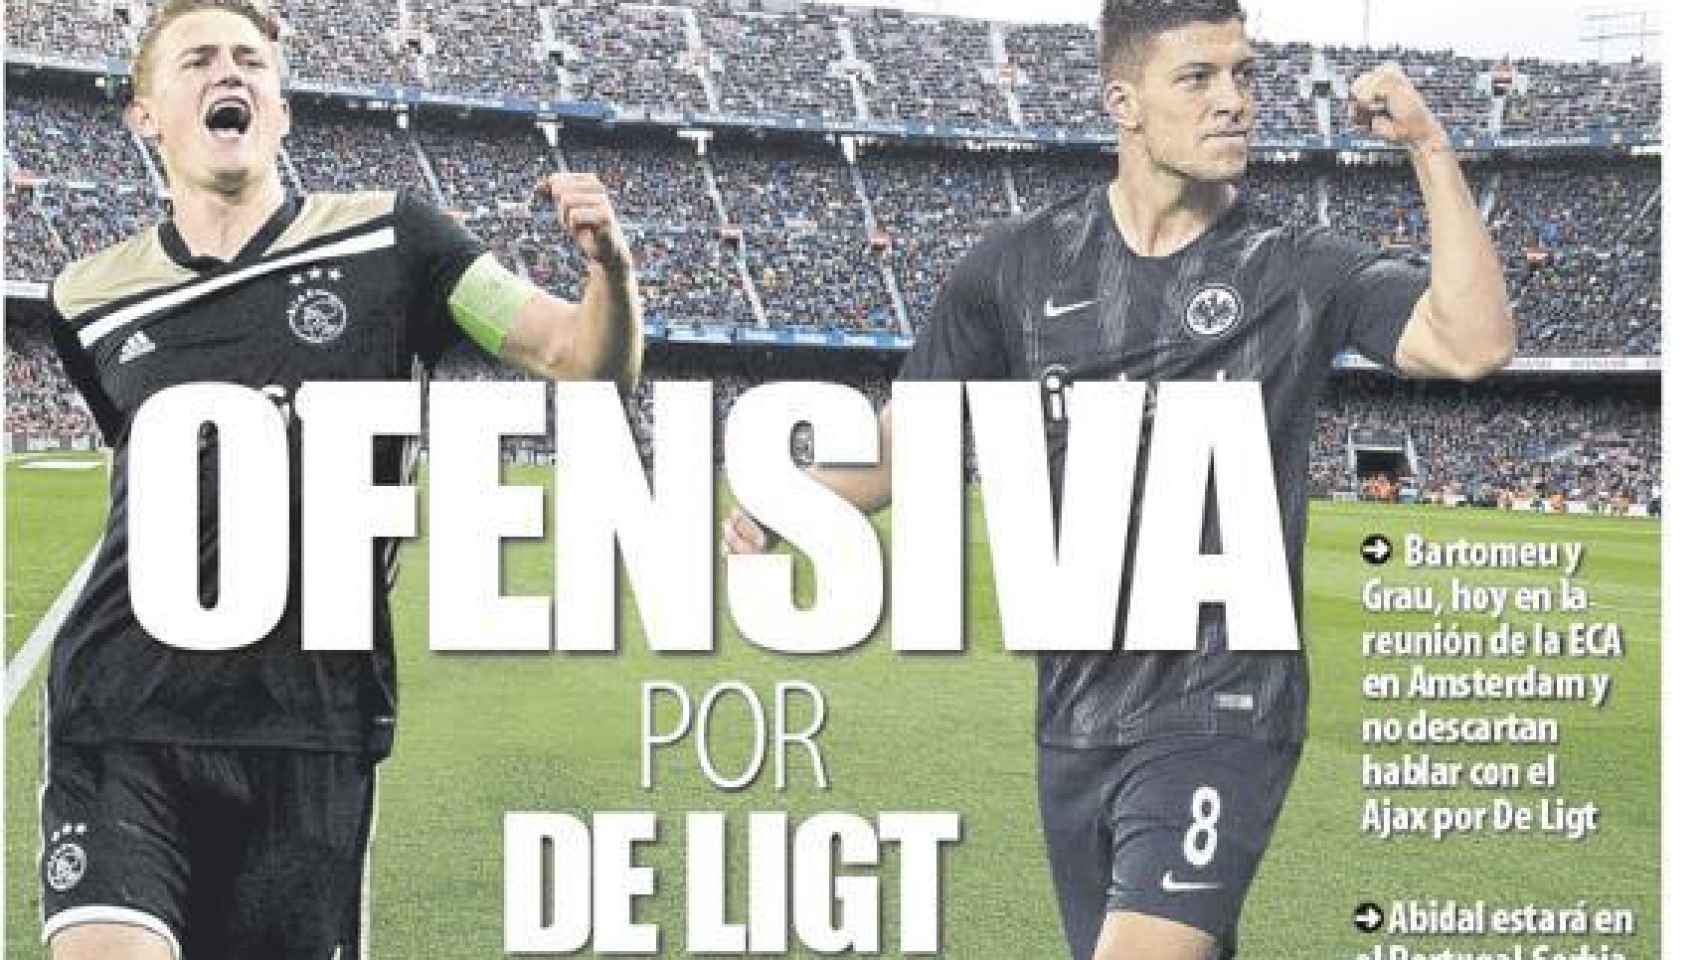 La portada del diario Mundo Deportivo (25/03/2019)